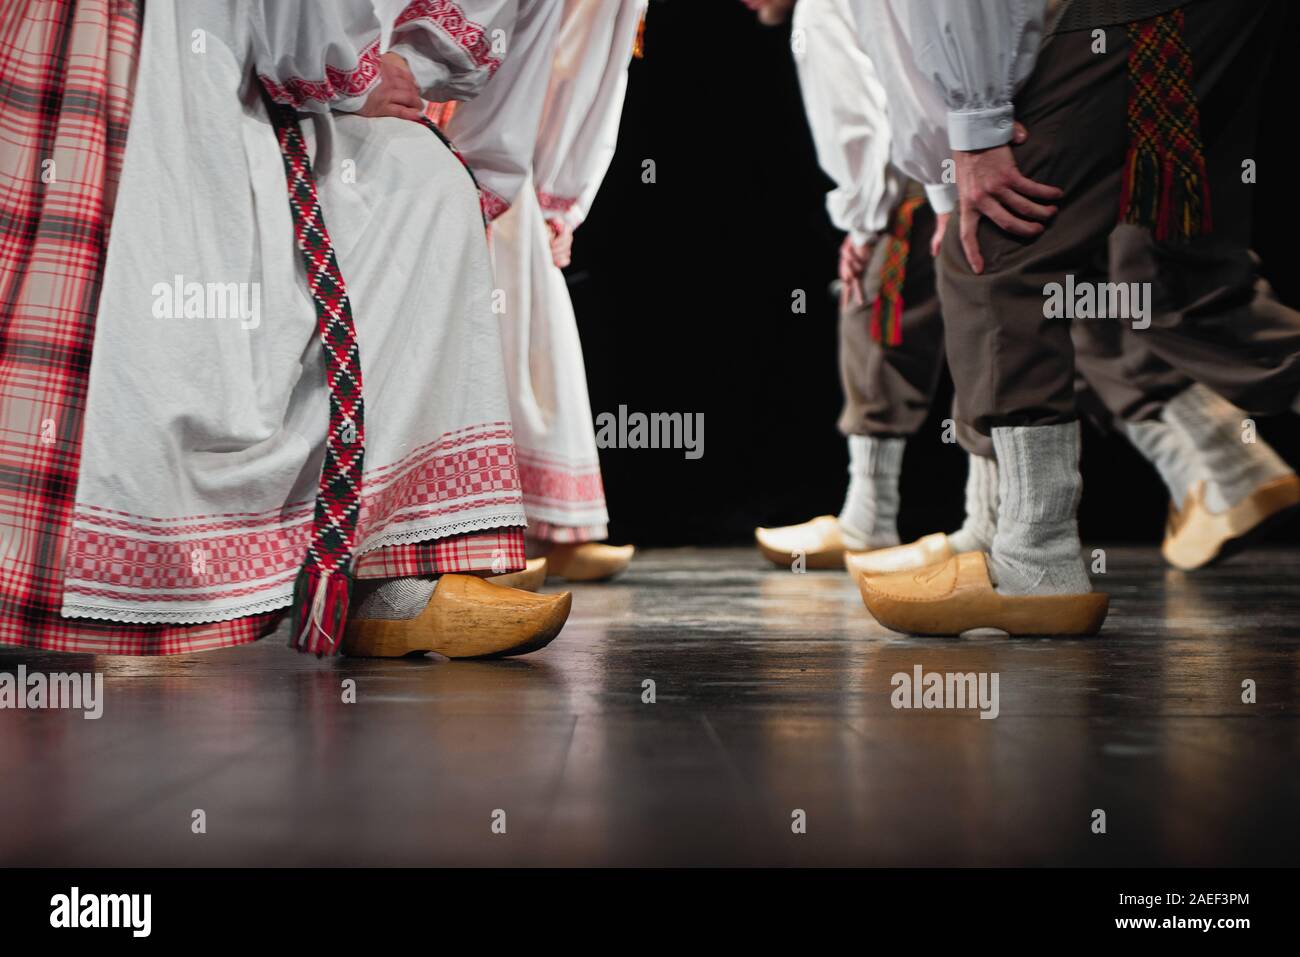 Composizione astratta che mostra le gambe vestite nel tradizionale lituana vestire in ballo nel folklore. Foto Stock